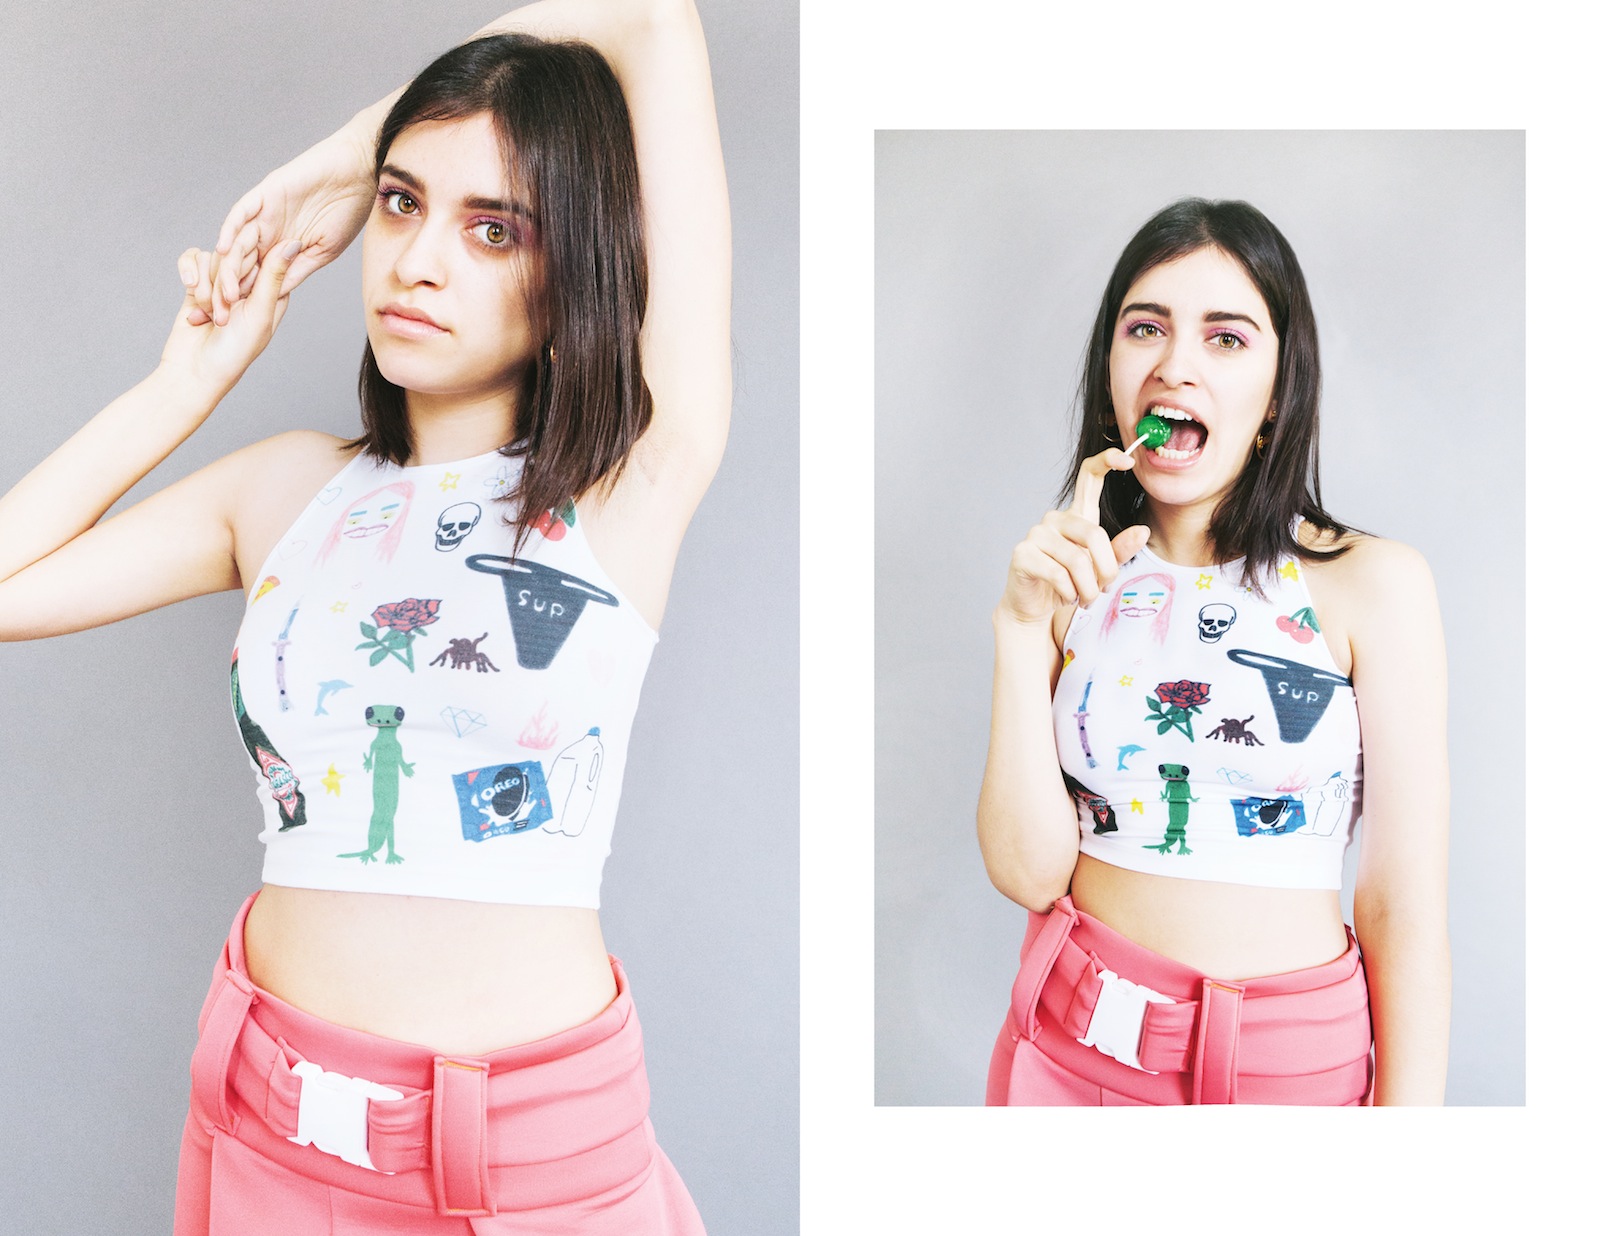 Art Baby Girl: La marca de ropa teen que se ríe y desvive por la cultura pop en Internet